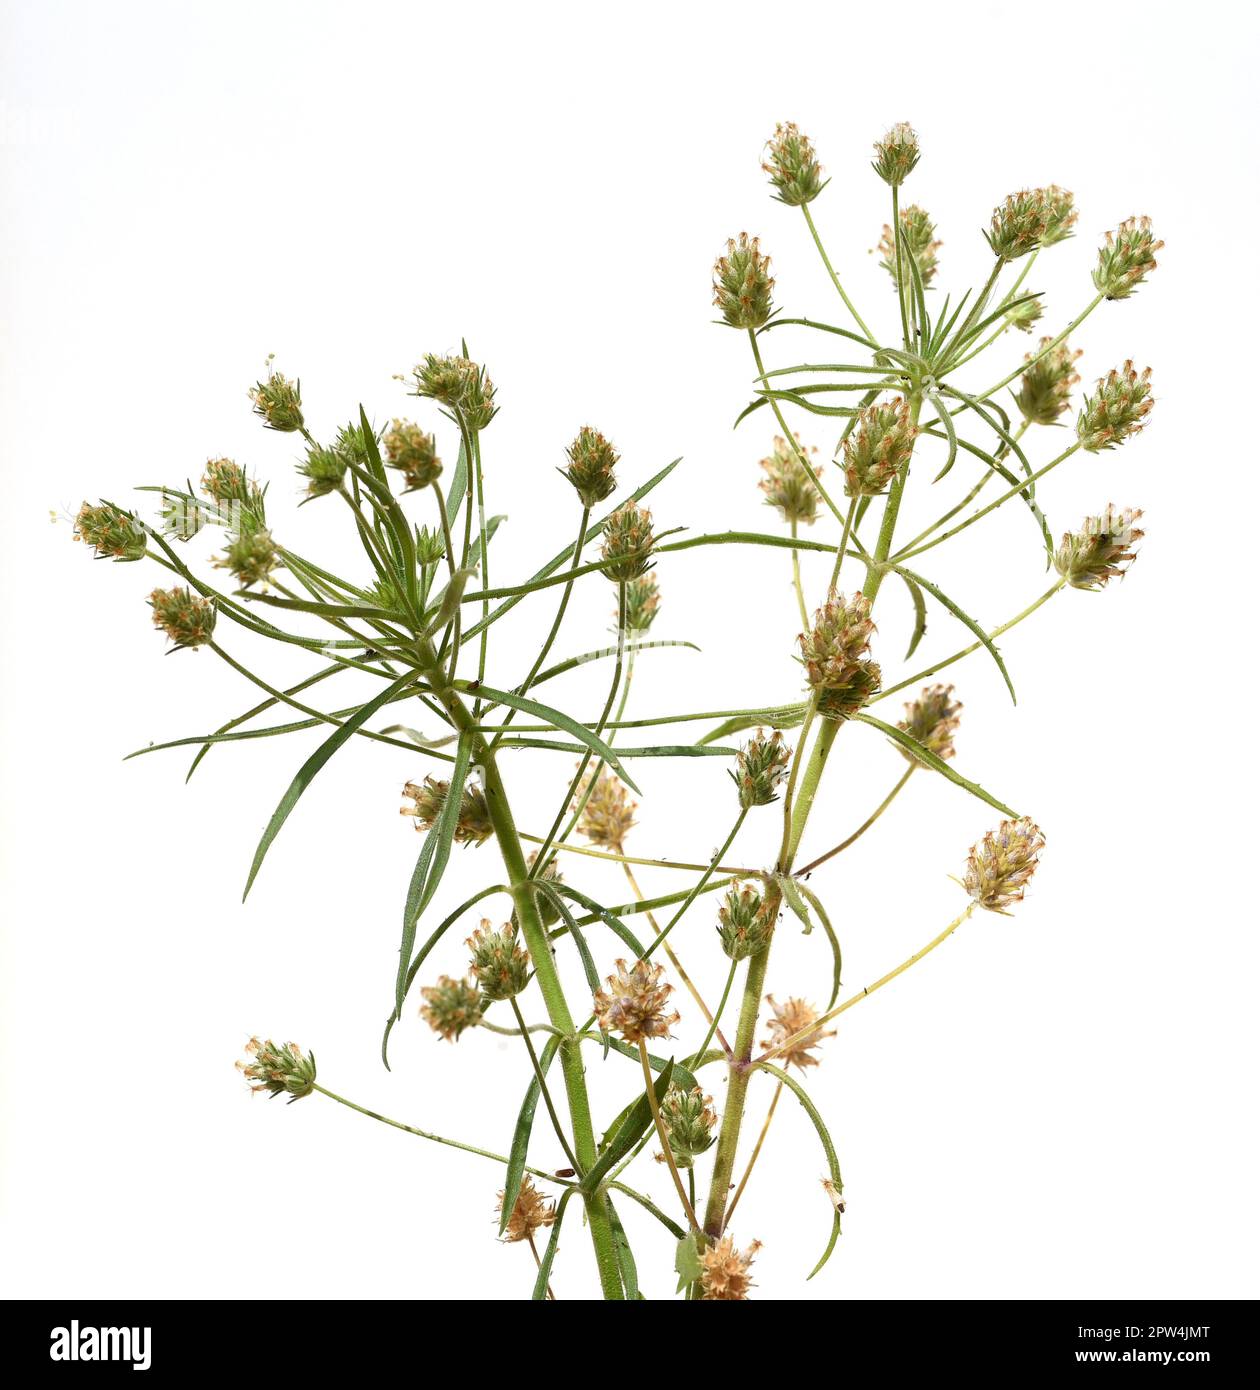 Flohsamen, Afra plantago ist eine wichtige Heilpflanze und wird haeufig in der Medizin verwendet. Die Pflanze ist einjaehrig. Black psyllium, Afra pla Stock Photo